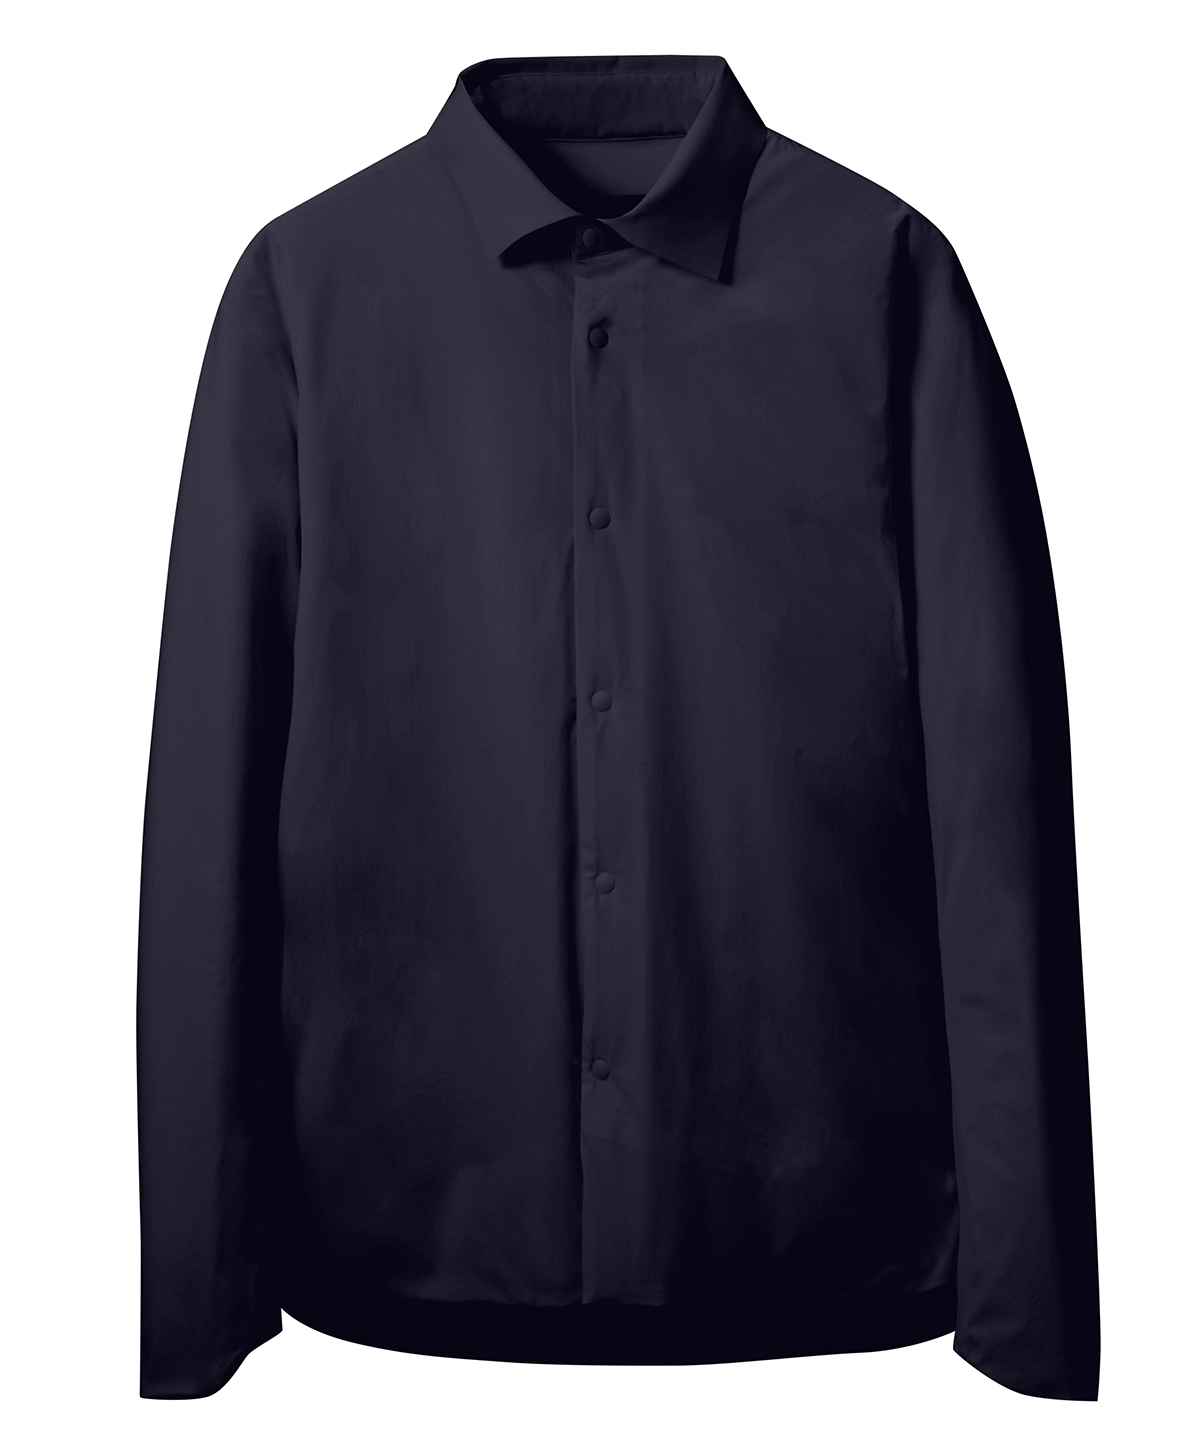 デサントオルテライン インシュレーションシャツ Lサイズ ブラック